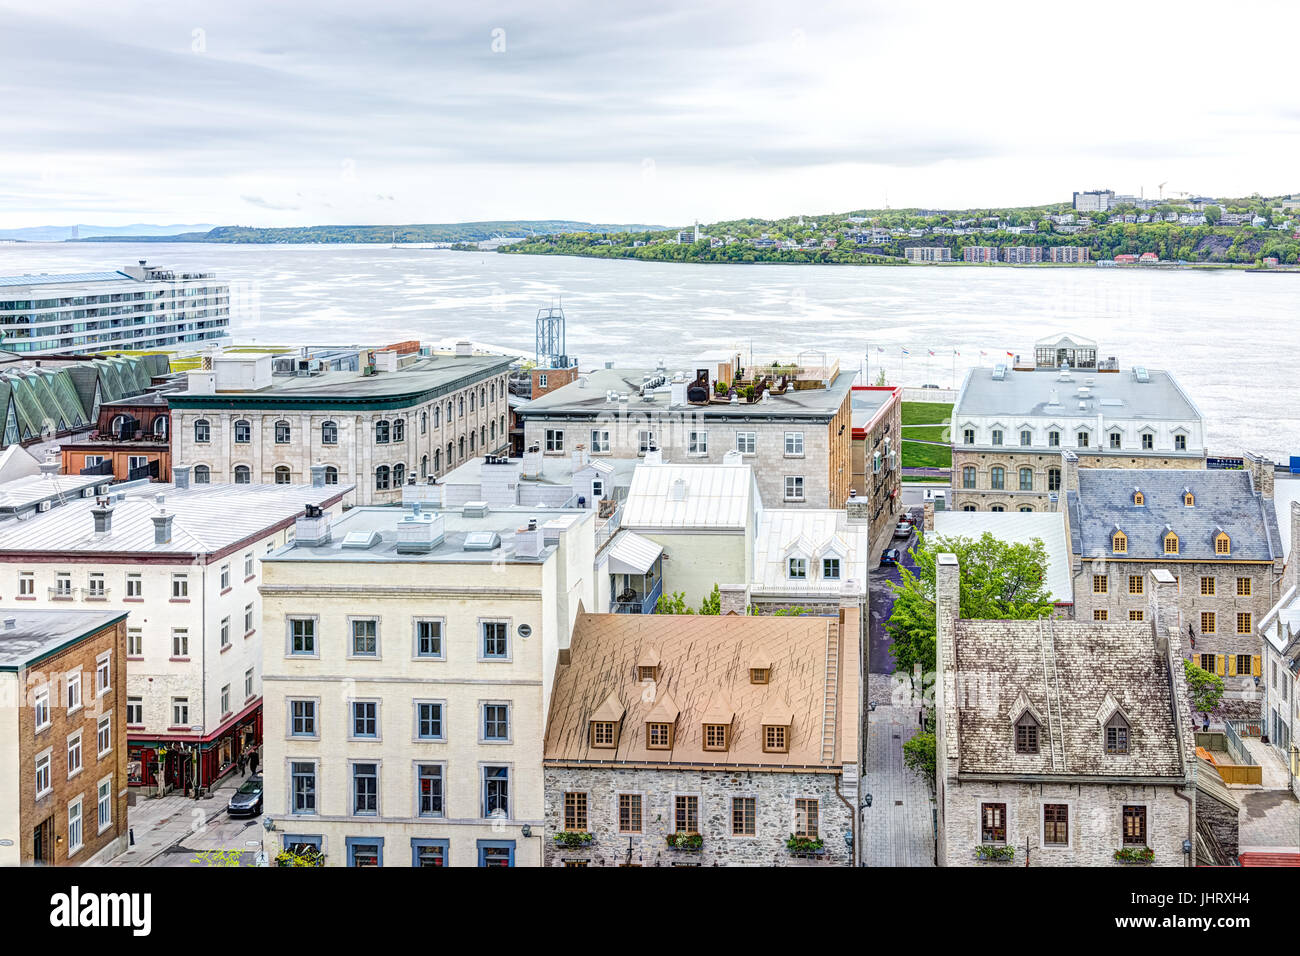 La ville de Québec, Canada - 30 mai 2017 : Paysage urbain ou des toits de bâtiments de la vieille ville basse avec vue sur le fleuve Saint-Laurent Banque D'Images